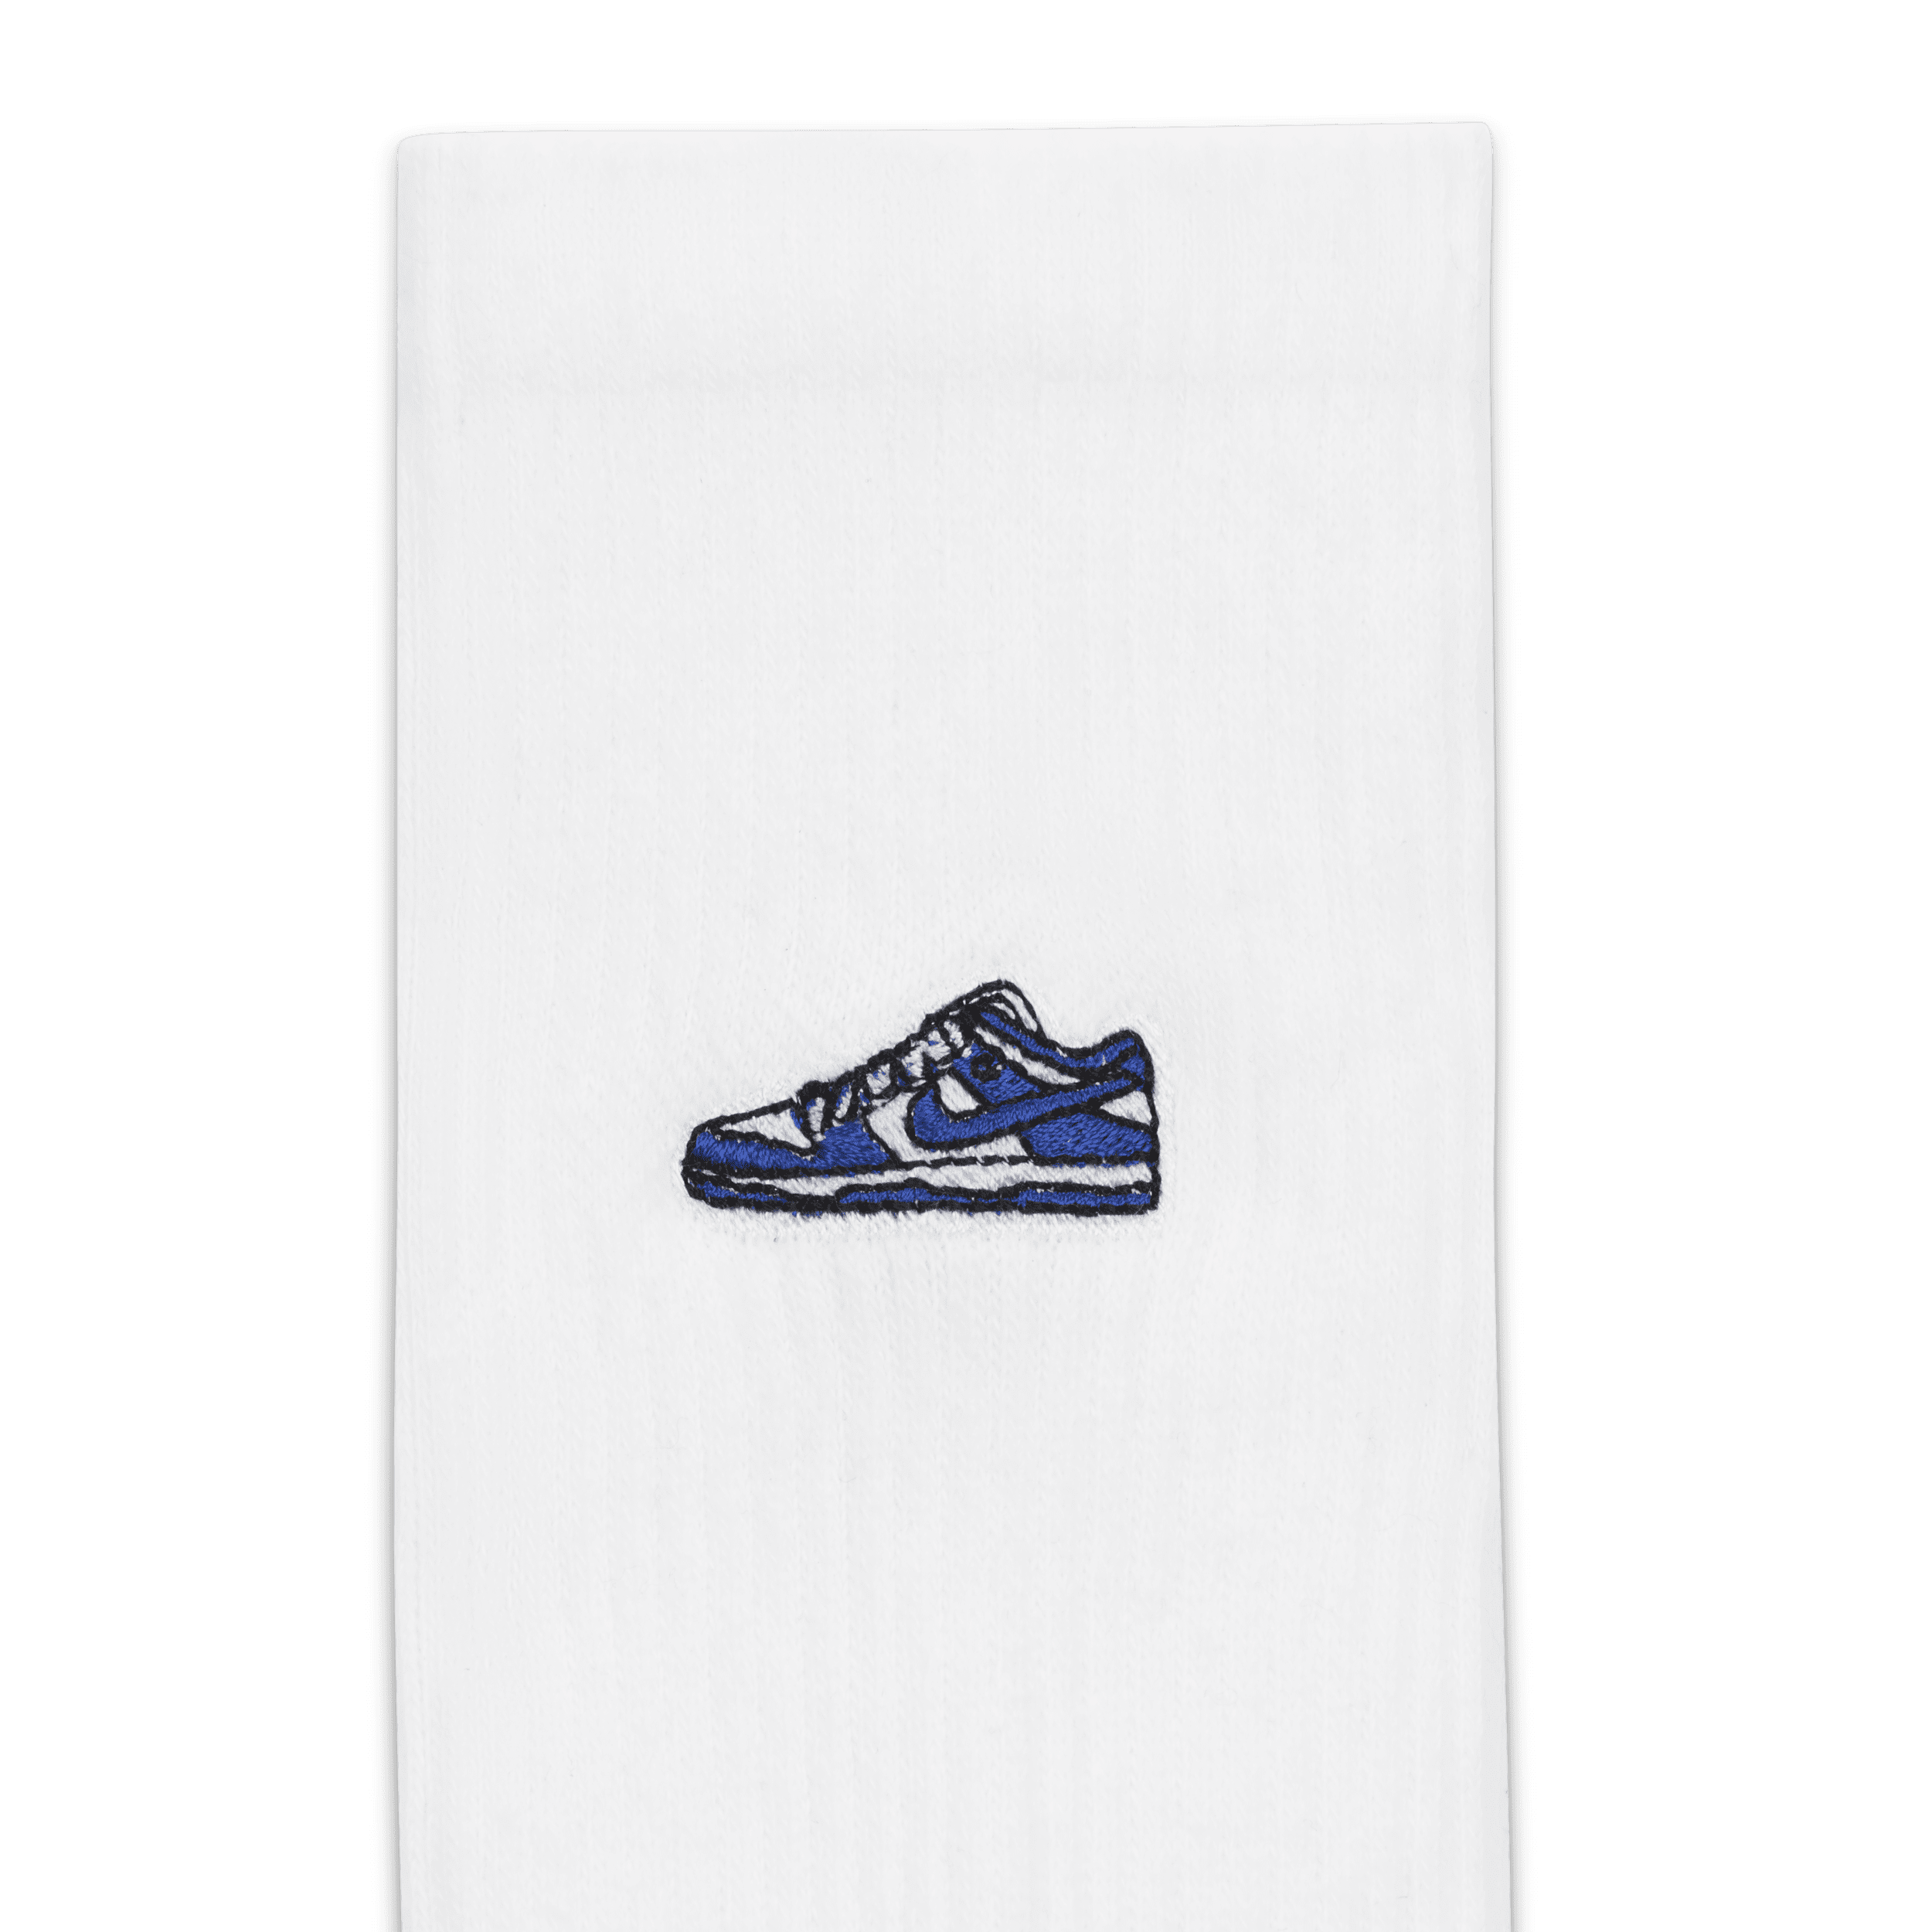 Nike Everyday Plus Crew sokken met demping (1 paar) Wit